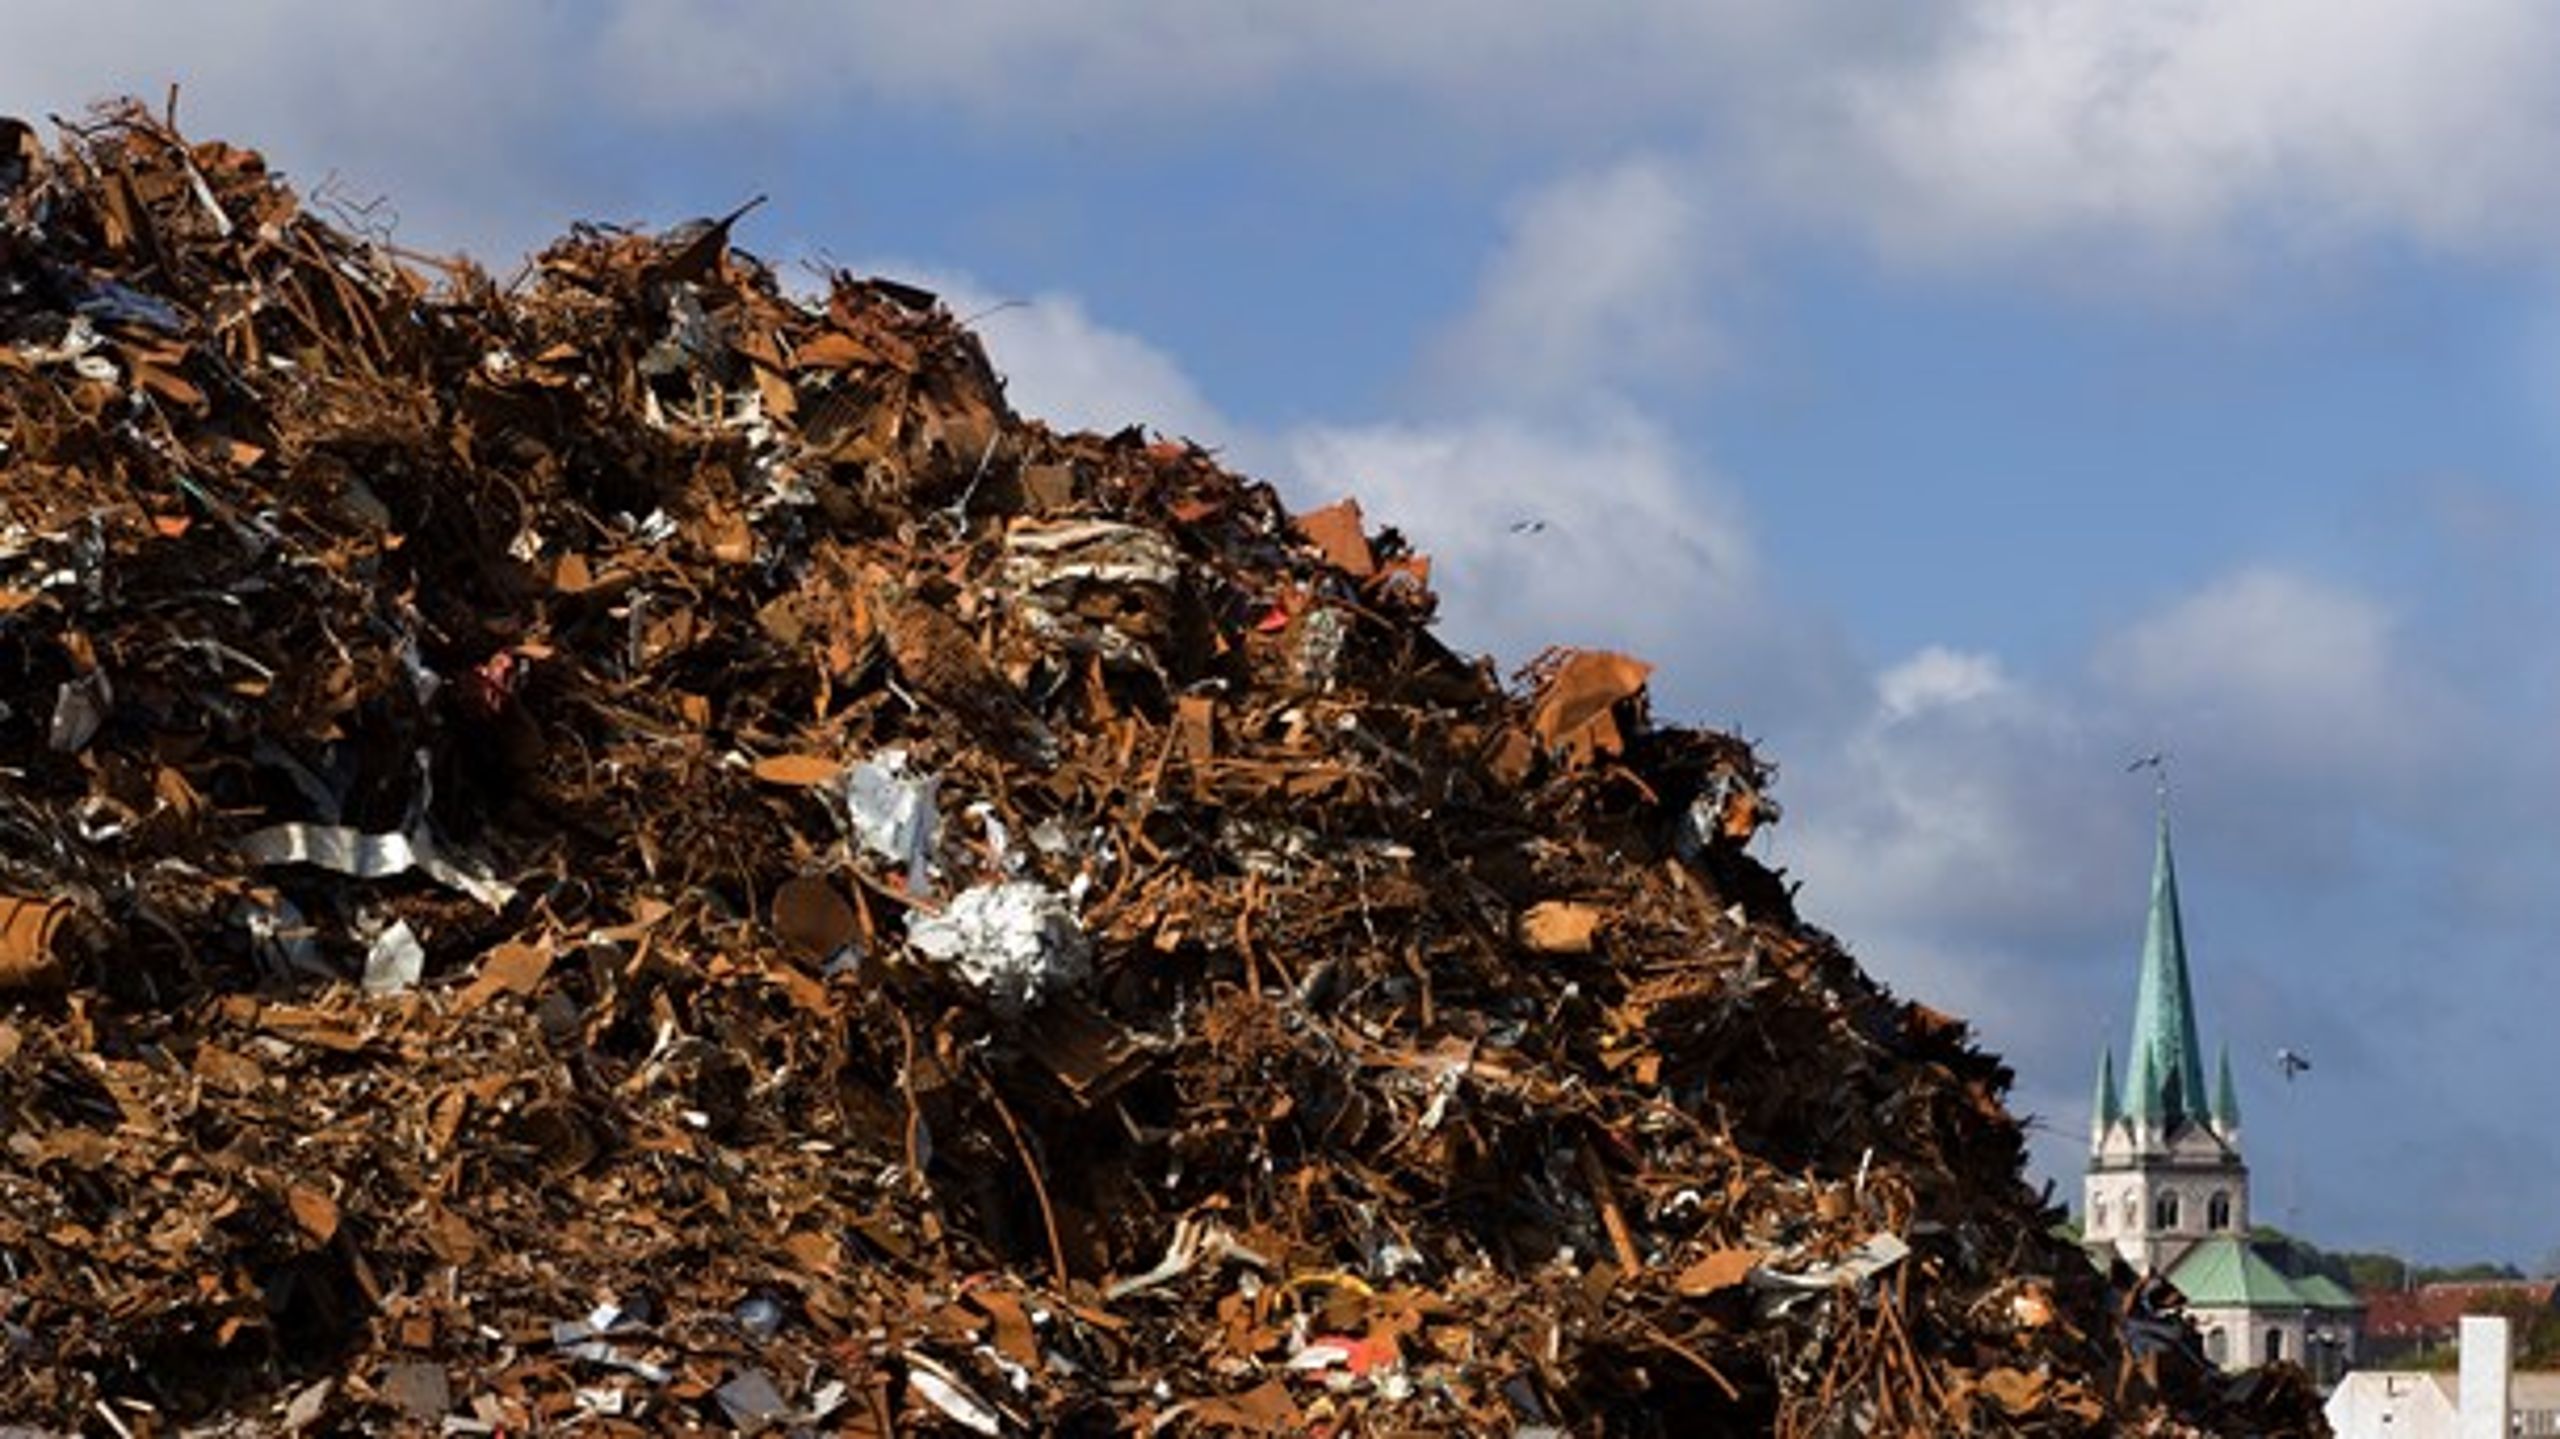 Advokat Line Markert skriver om de regulatoriske udfordringer, der er forbundet med landfill mining i kommunerne.